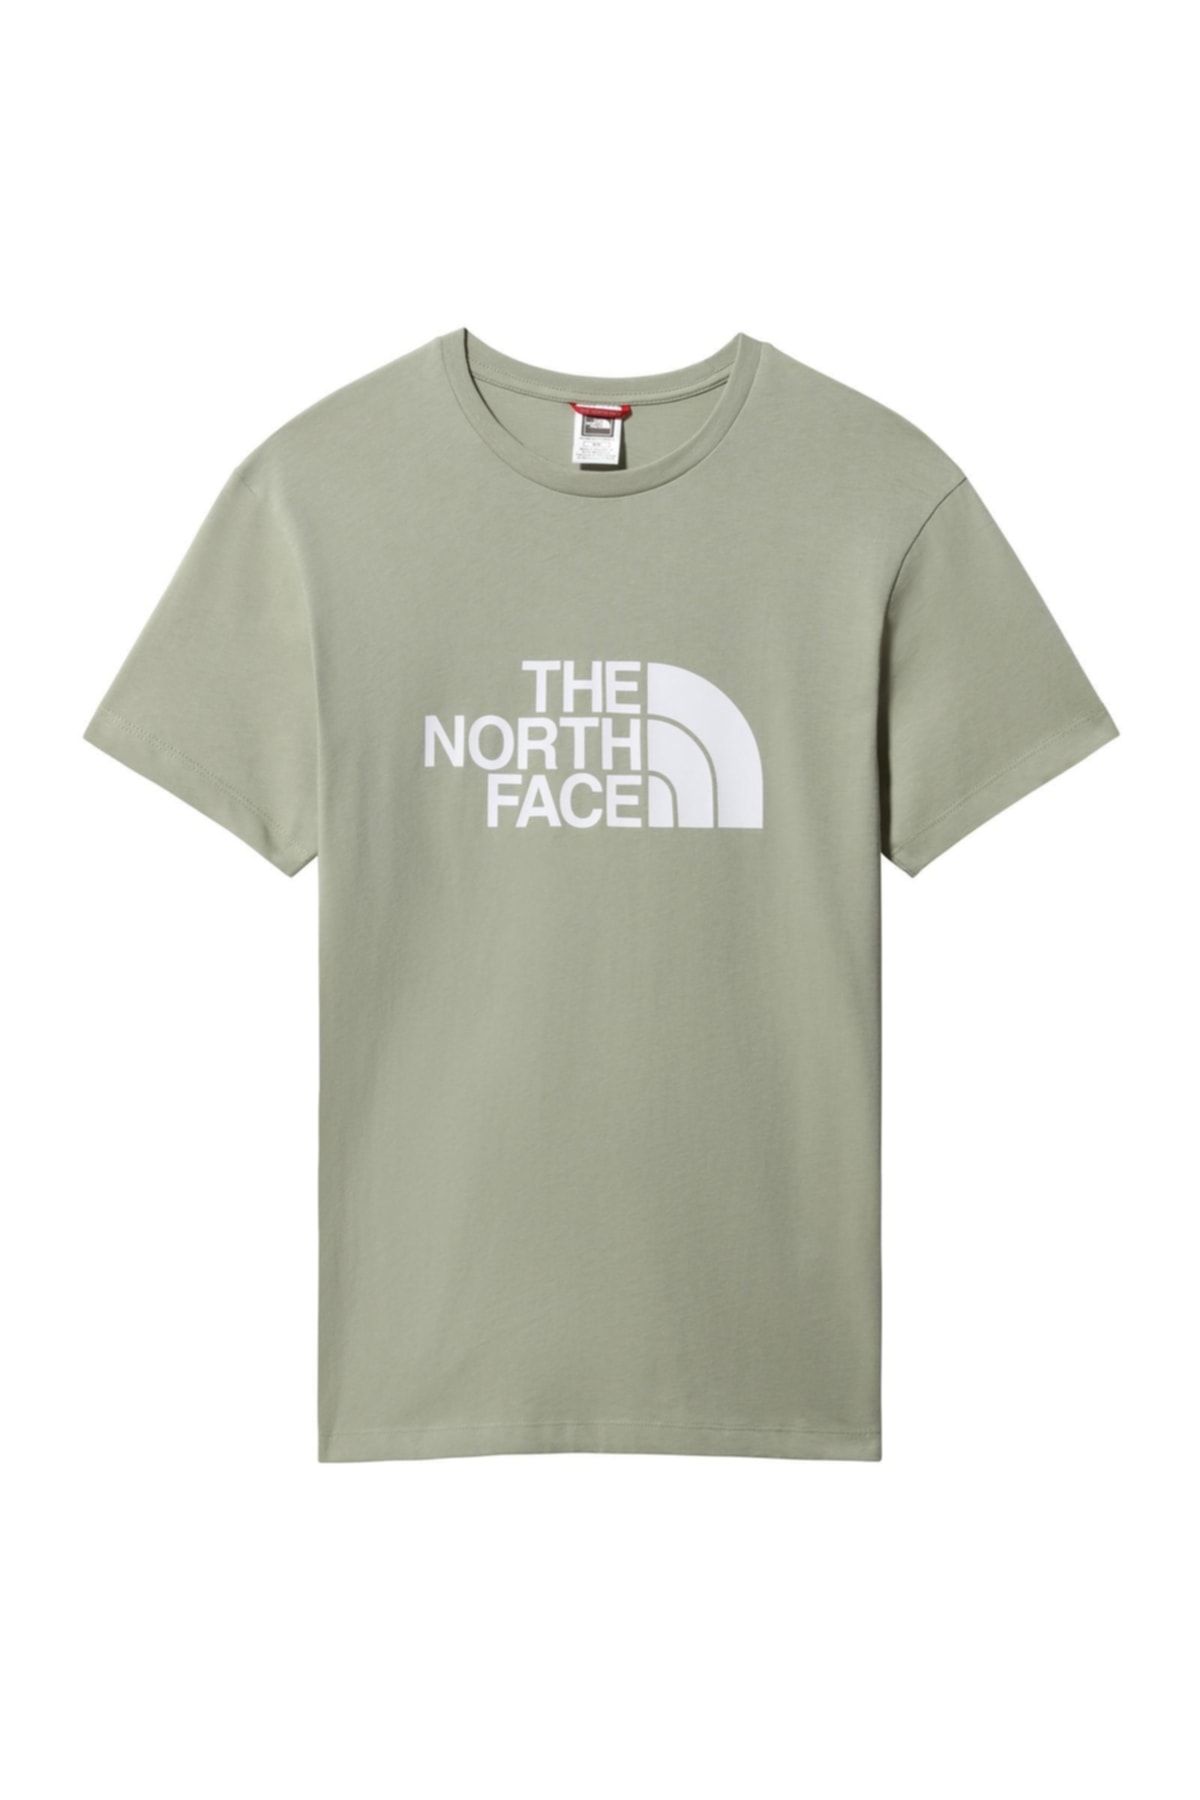 The North Face Easy Tee Kadın T-shirt - Nf0a4t1q3x3